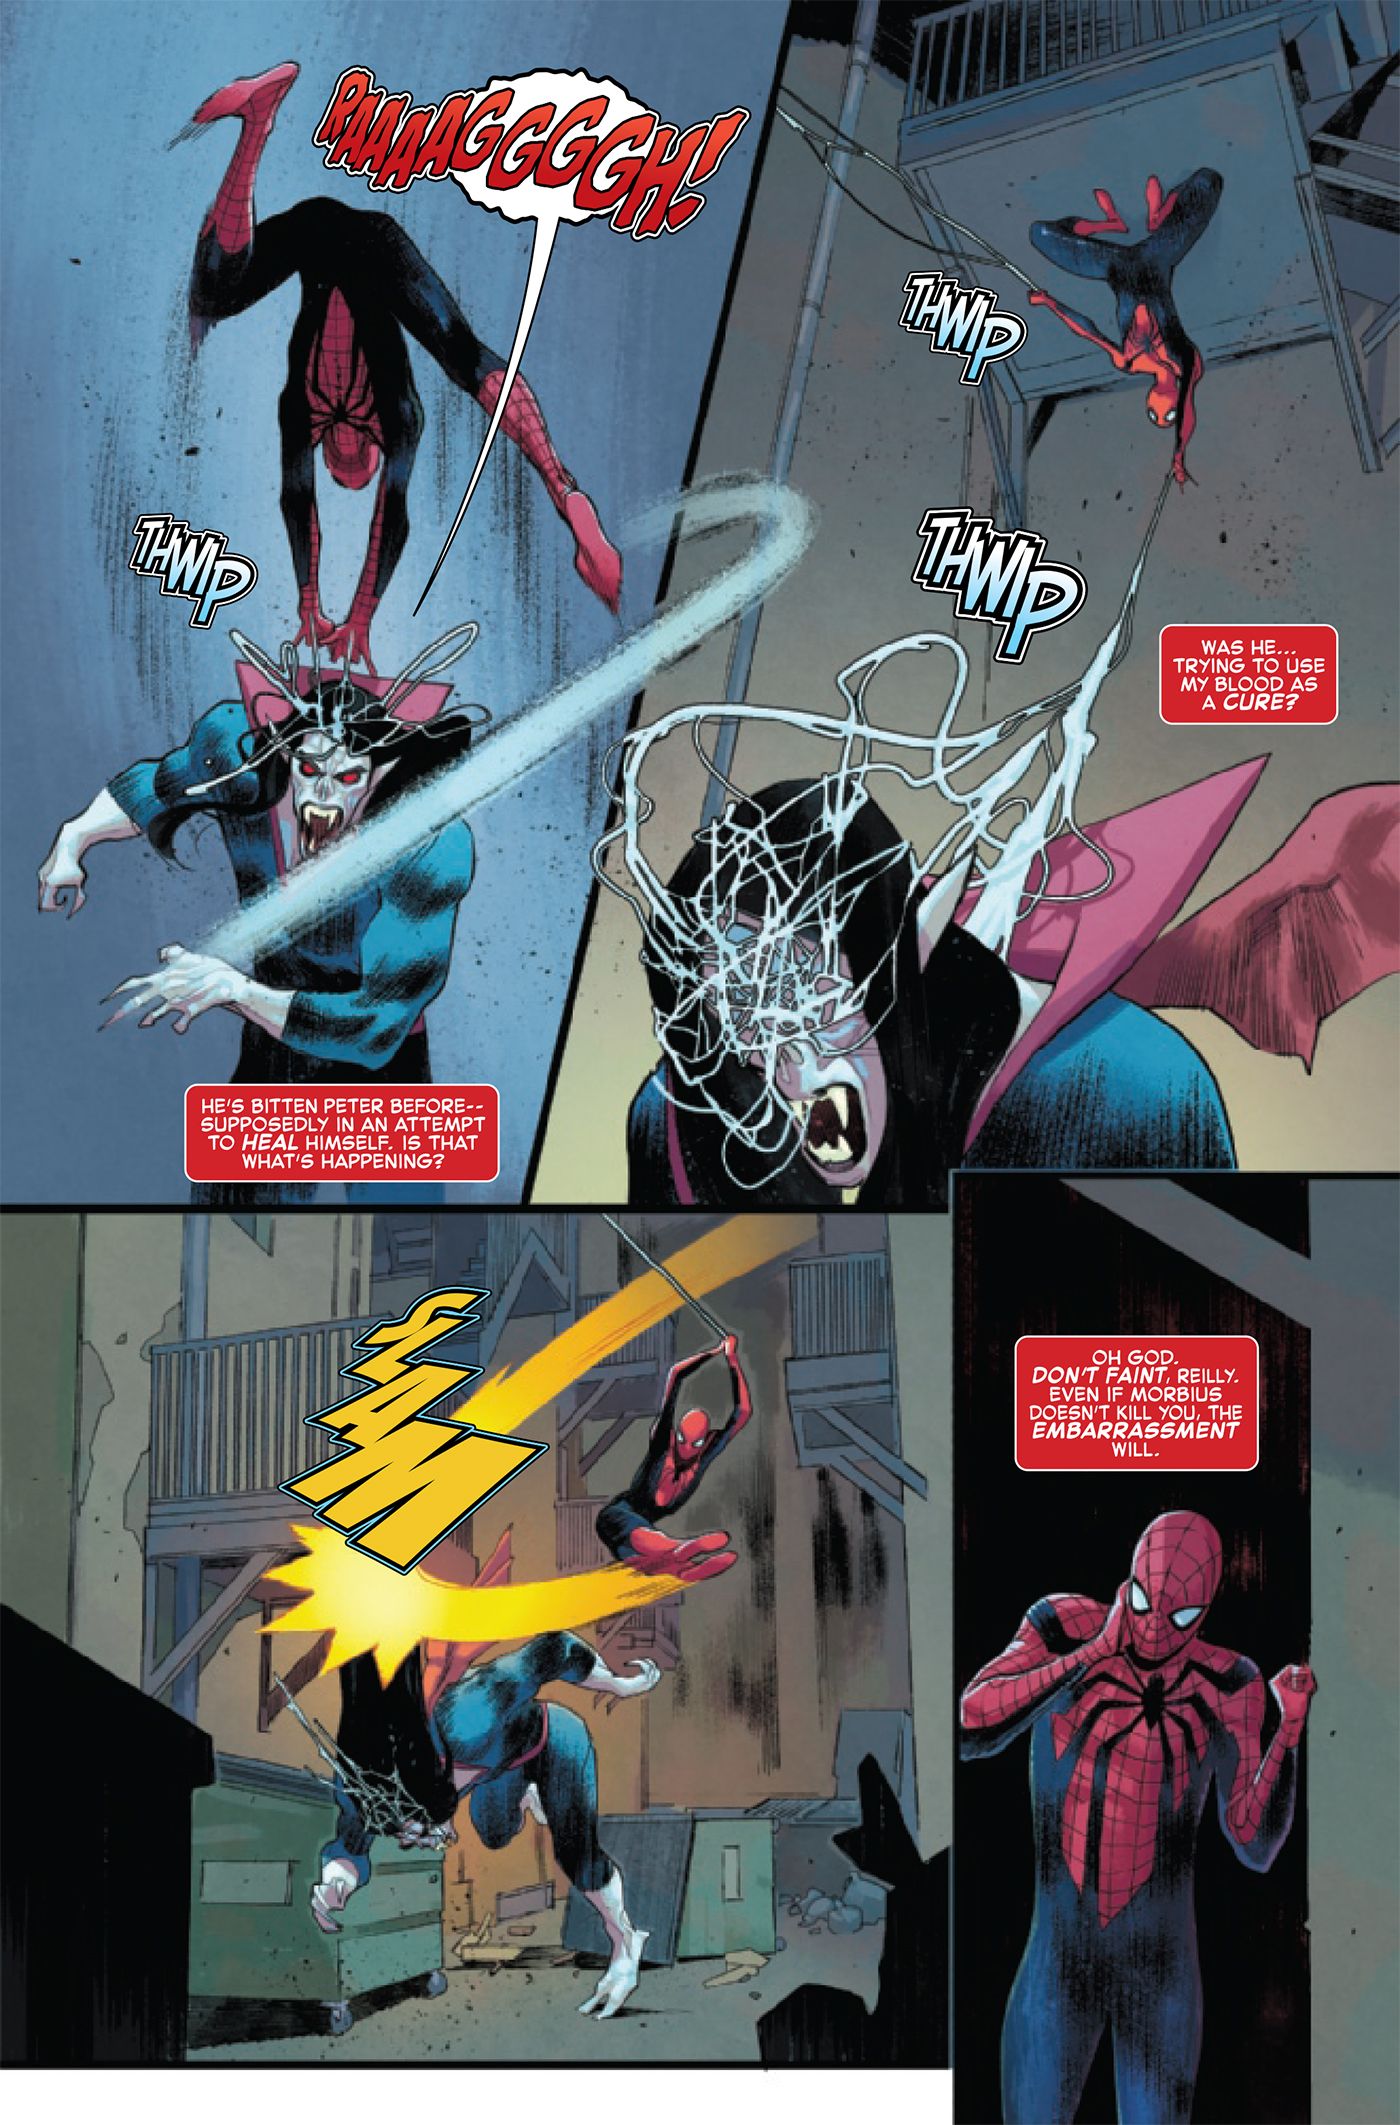 Amazing Spider-Man #78 4